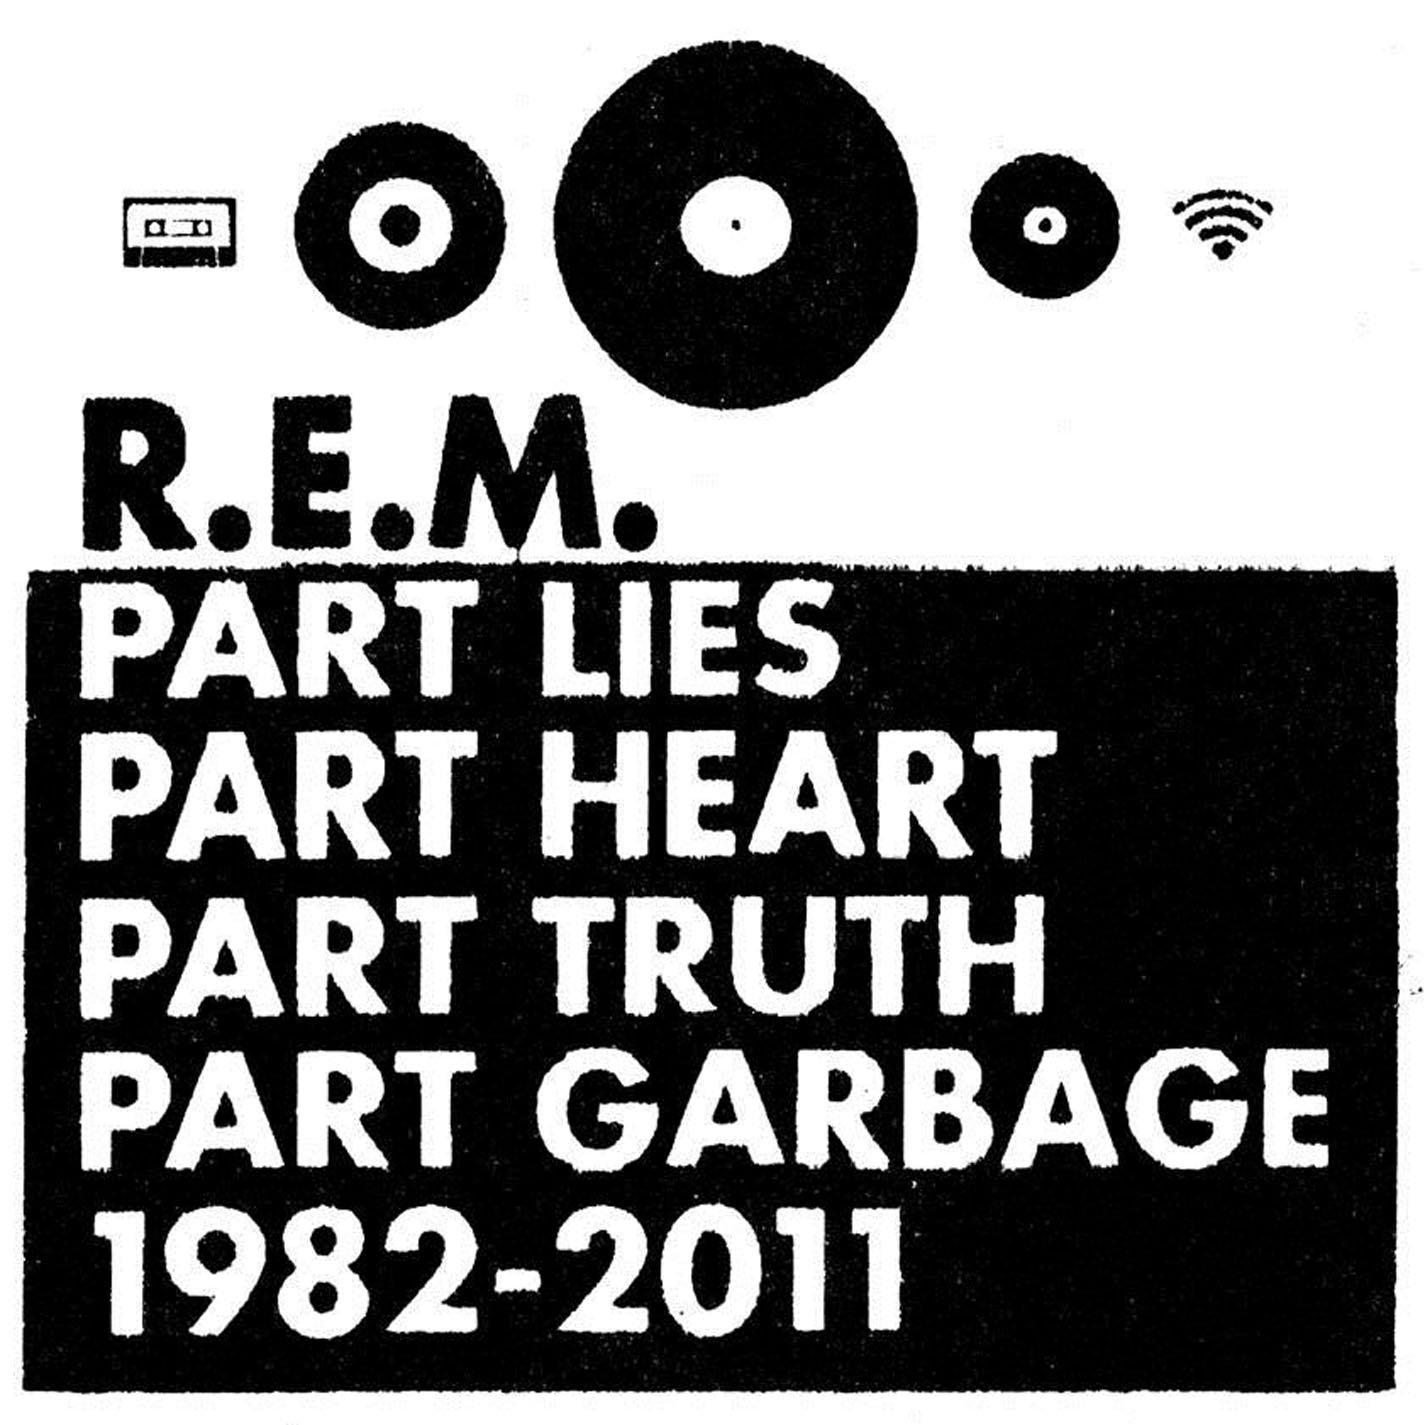 audio review : Part Lies Part Heart Part Truth Part Garbage ( album ) ... REM